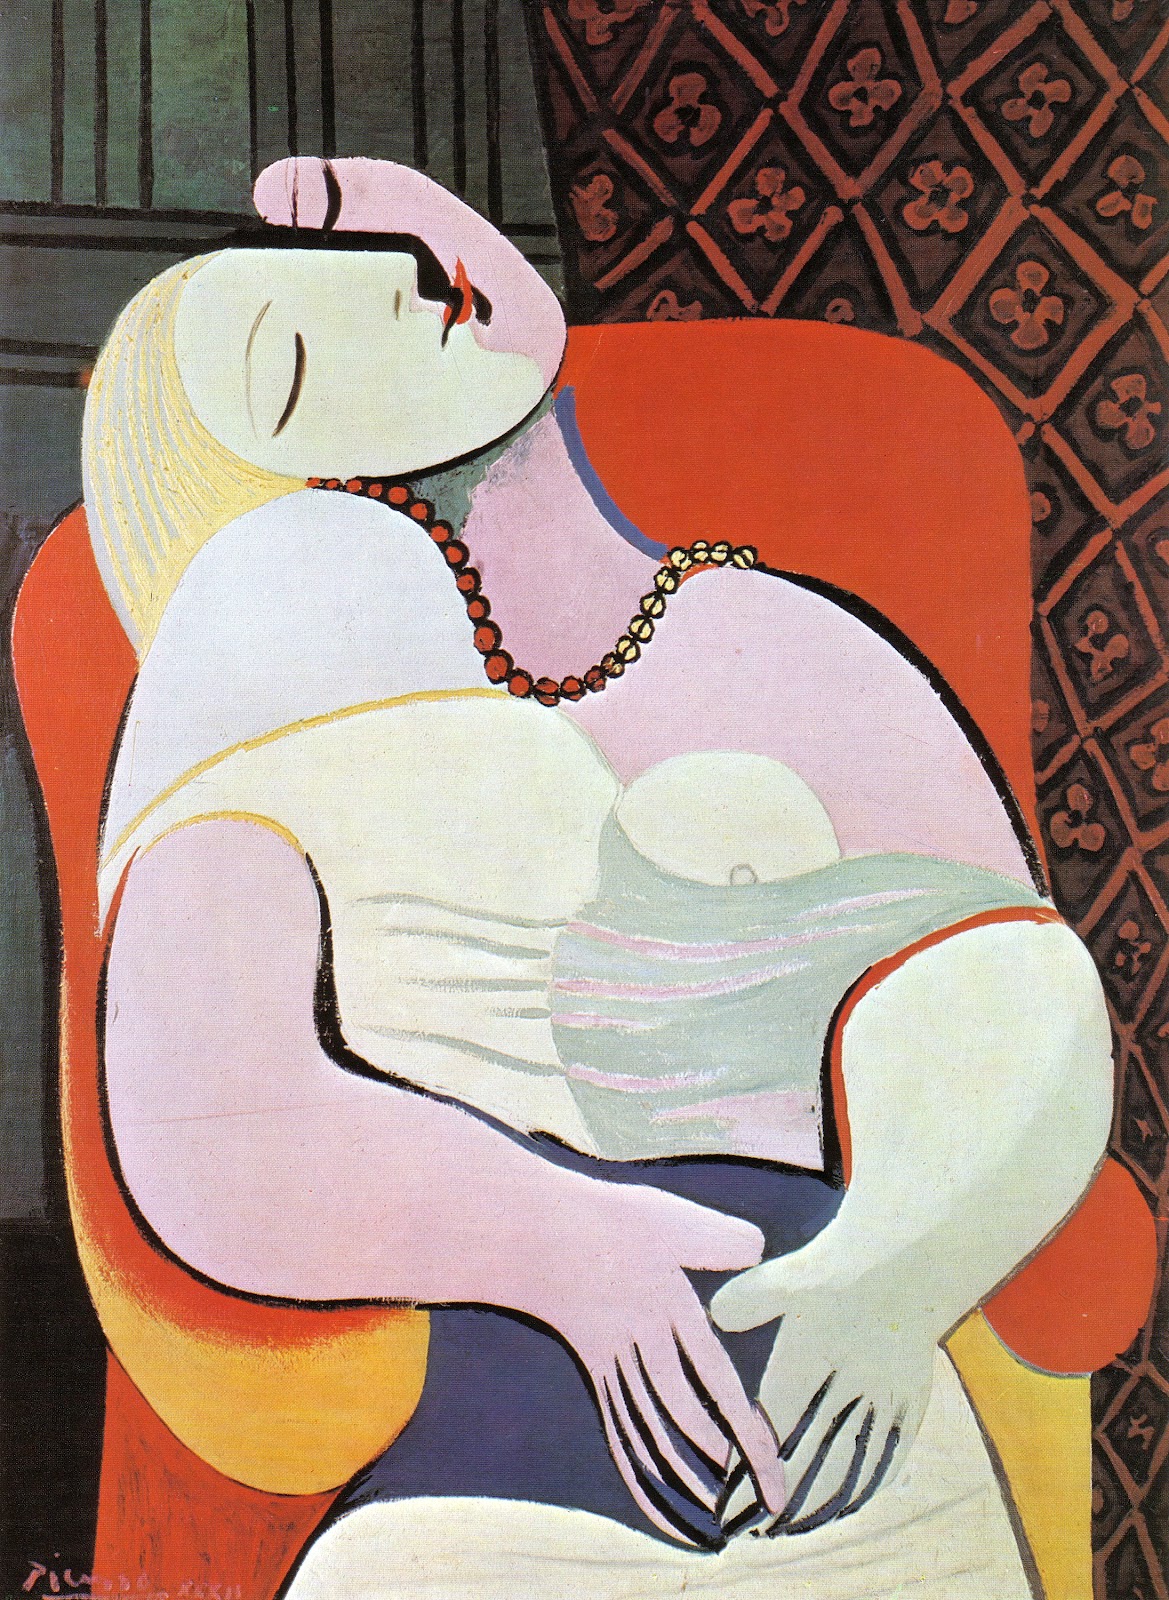 Le Rêve by Pablo Picasso - 1932 - 130 cm × 97 cm collection privée